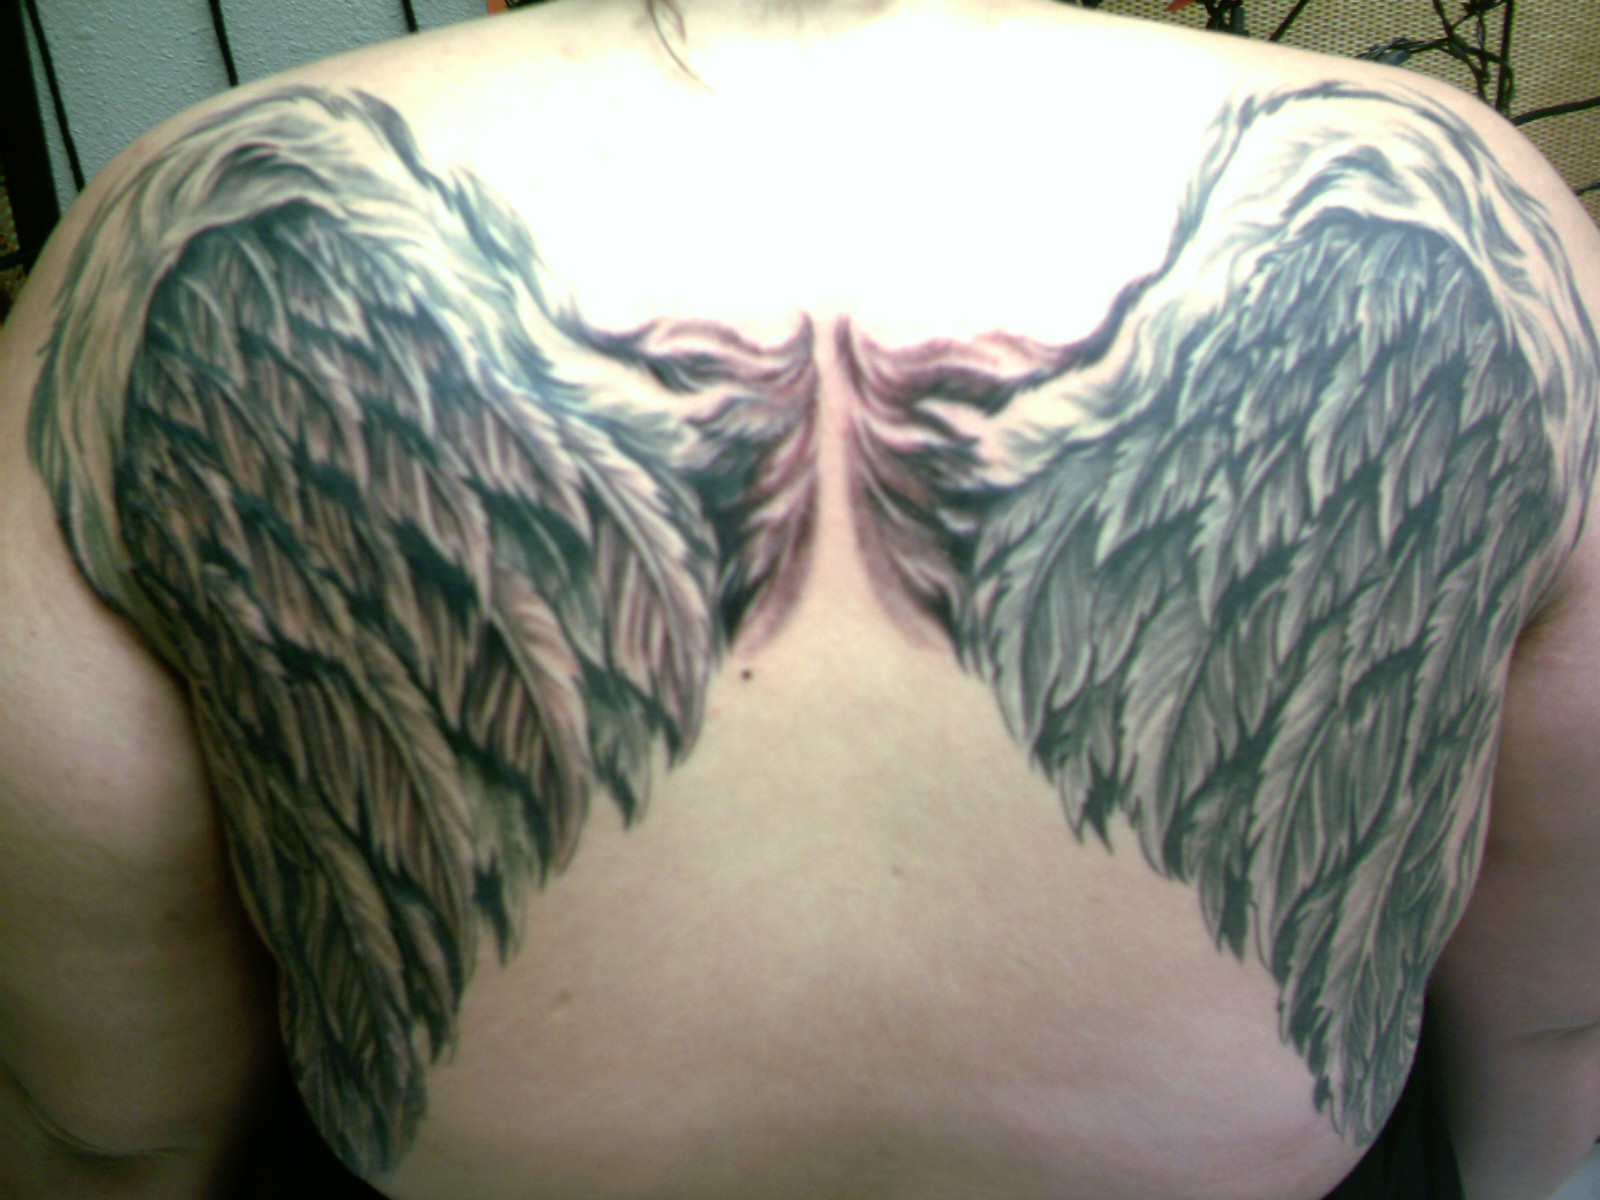 http://4.bp.blogspot.com/--KuCG0-fBBA/TxuWF2lARaI/AAAAAAAAAFs/mBeNbfPqIqY/s1600/simple+angel+wings+tattoo+84fg.jpg